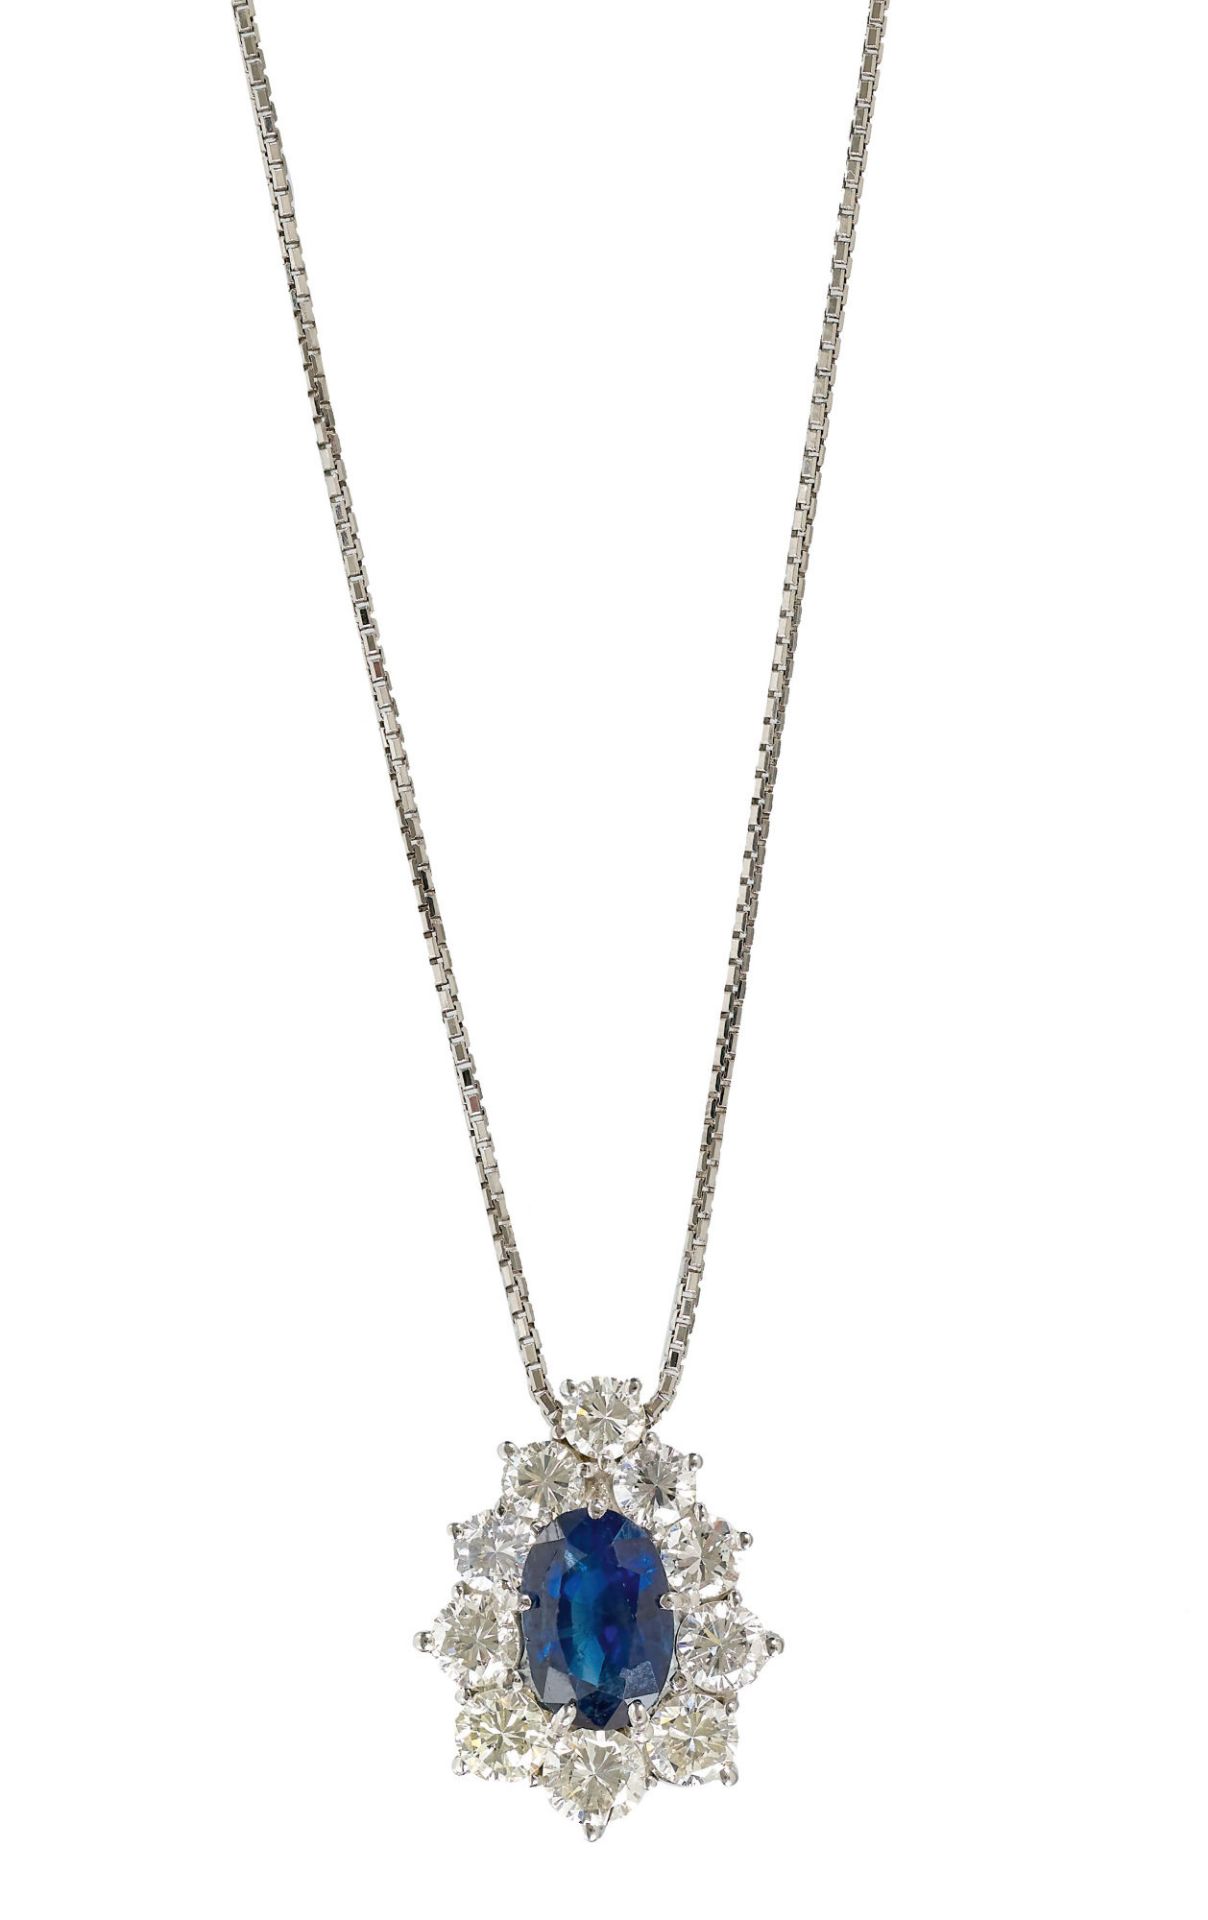 SAPHIR-BRILLANT-ANHÄNGER MIT KETTE / Sapphire-diamond-pendant necklace  - Bild 2 aus 2